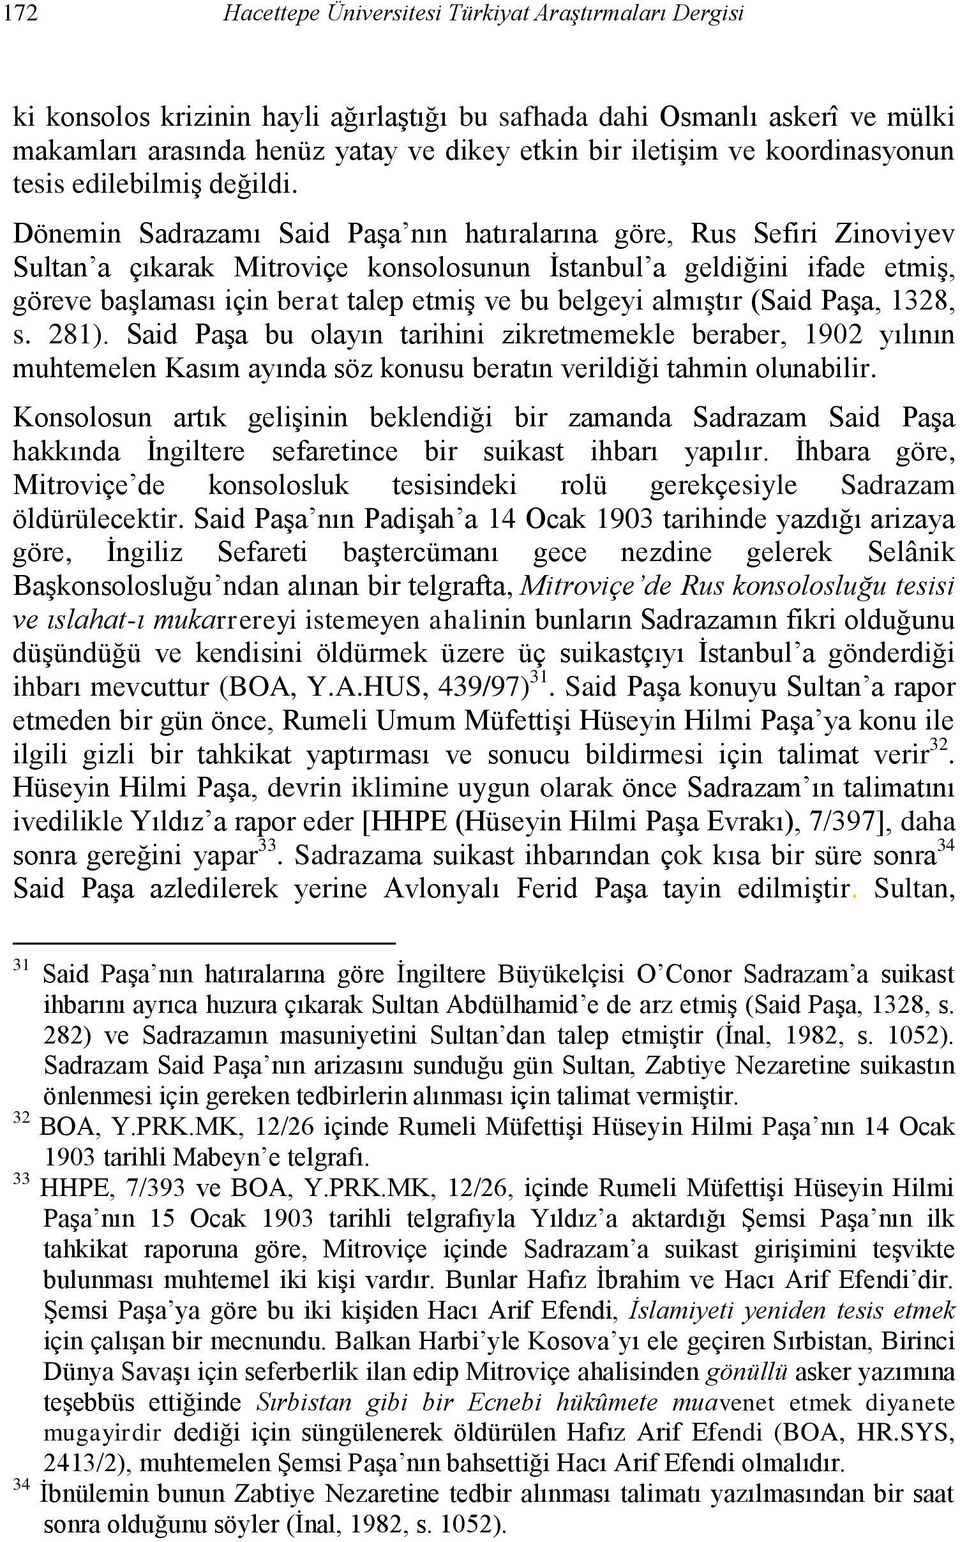 Dönemin Sadrazamı Said Paşa nın hatıralarına göre, Rus Sefiri Zinoviyev Sultan a çıkarak Mitroviçe konsolosunun İstanbul a geldiğini ifade etmiş, göreve başlaması için berat talep etmiş ve bu belgeyi